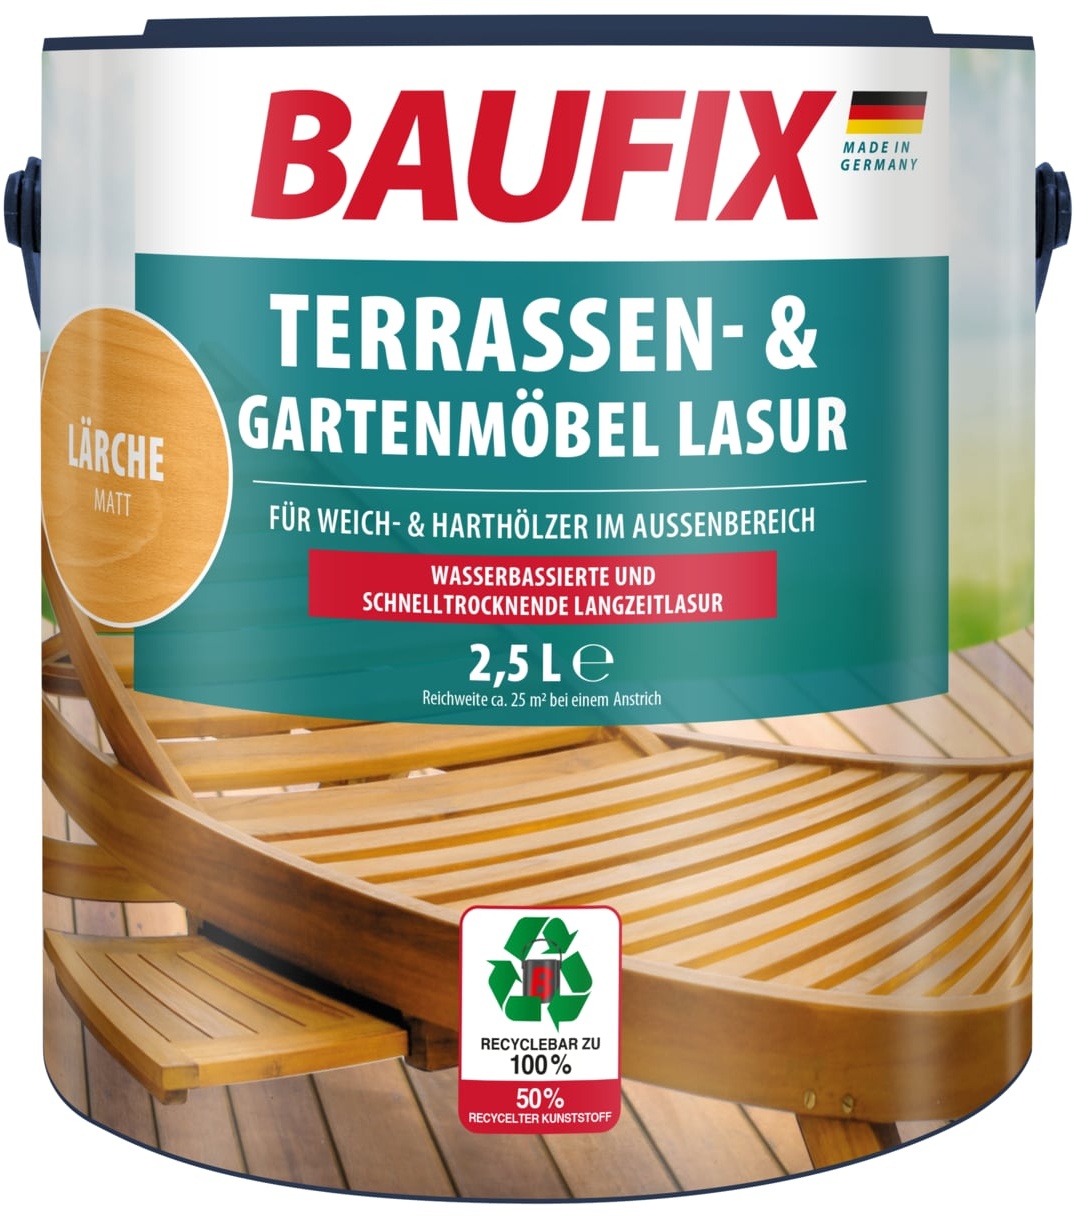 BAUFIX Terrassen- & Gartenmöbel-Lasur lärche matt, 2.5 Liter, Holzöl